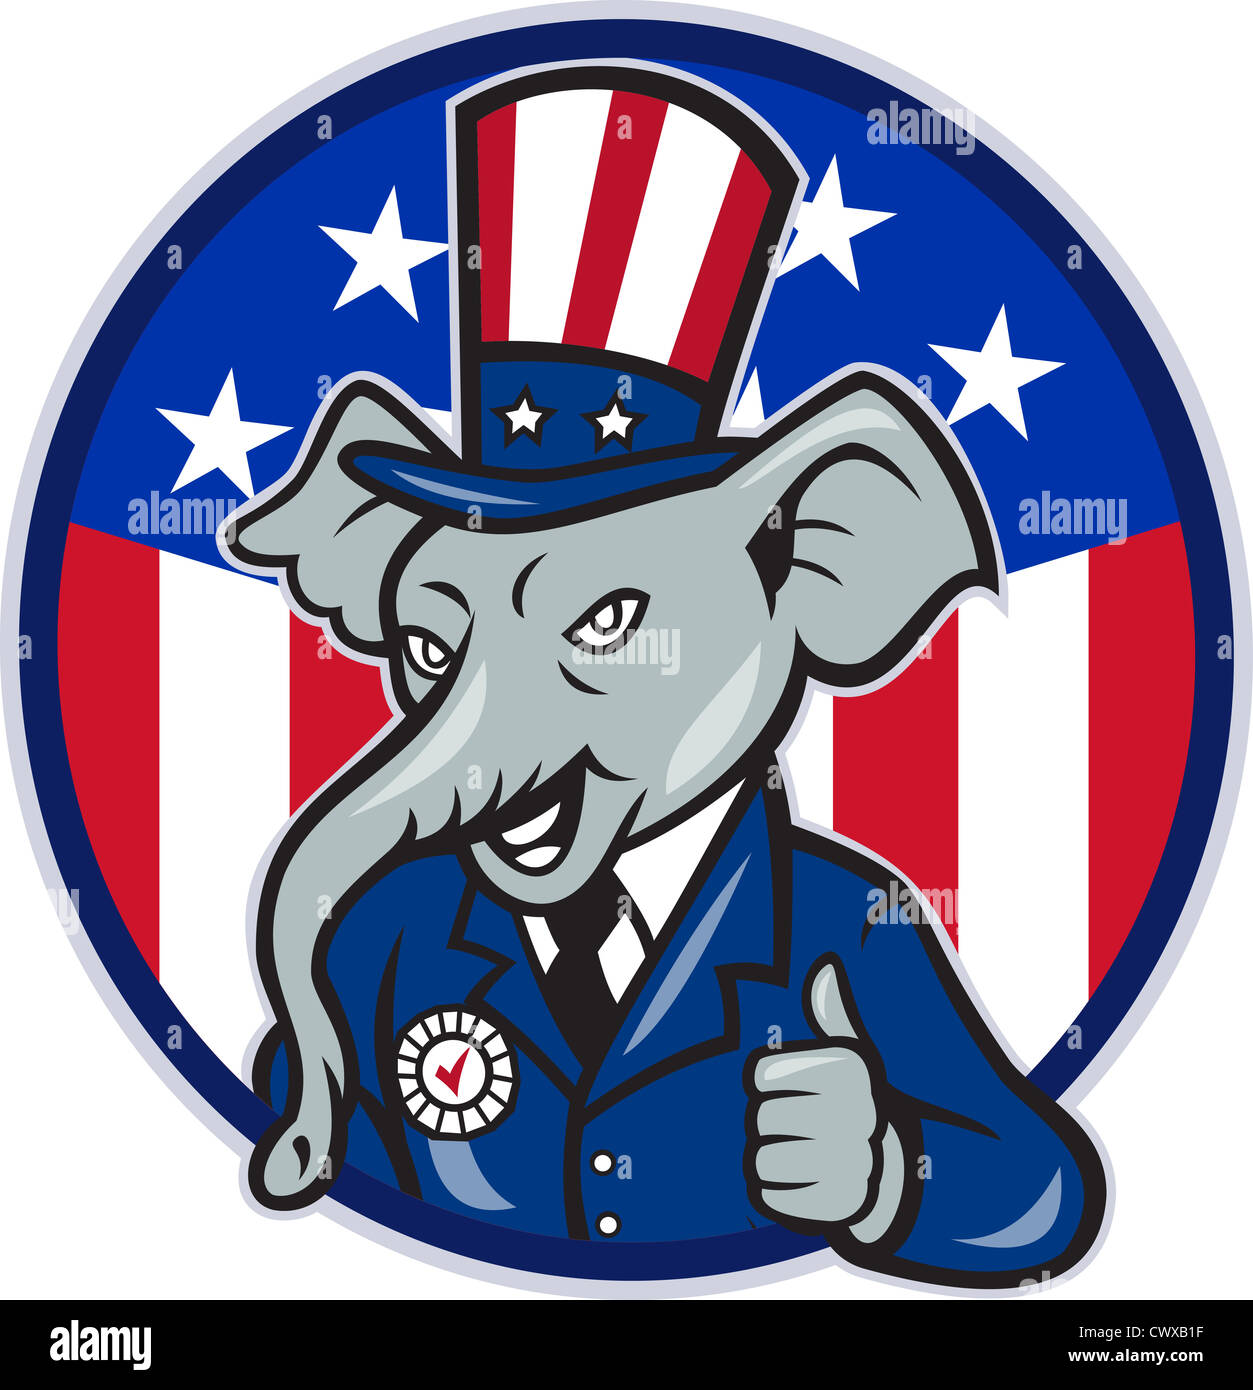 Illustration d'une mascotte éléphant républicain du grand vieux parti républicain gop wearing hat et costume Thumbs up Banque D'Images